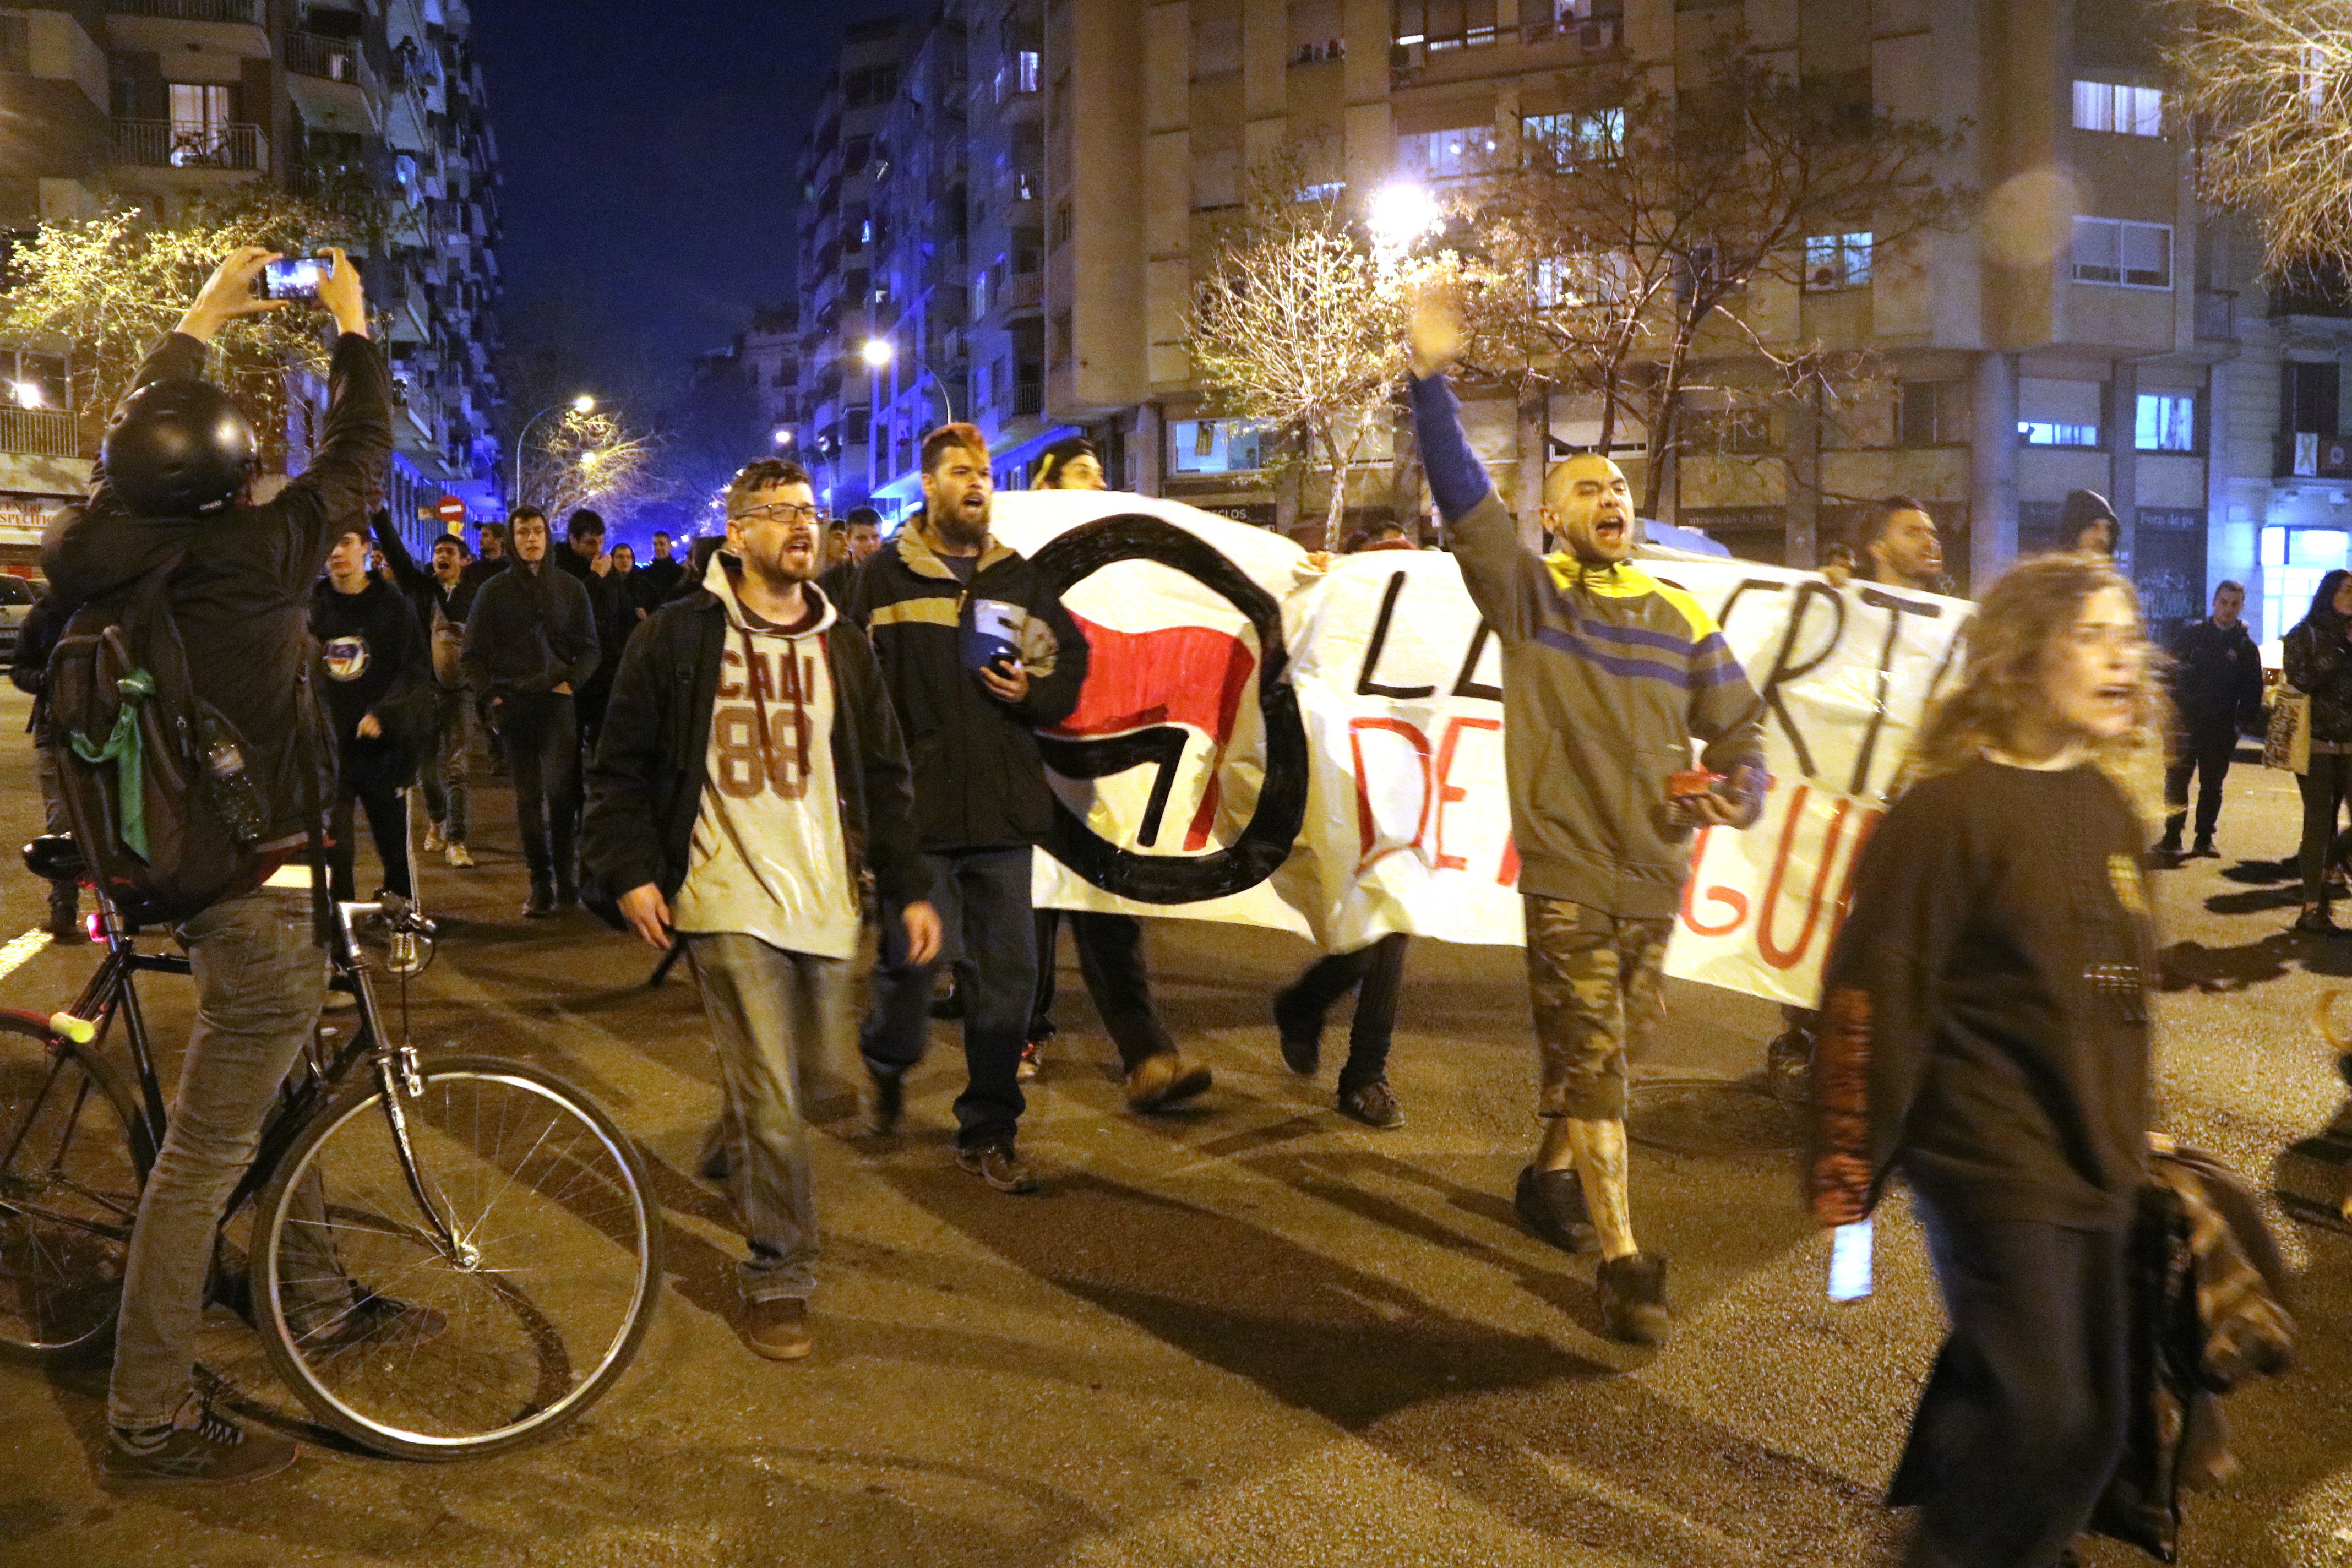 Unas 300 personas piden libertad para la antifascista encarcelada por la protesta contra Vox